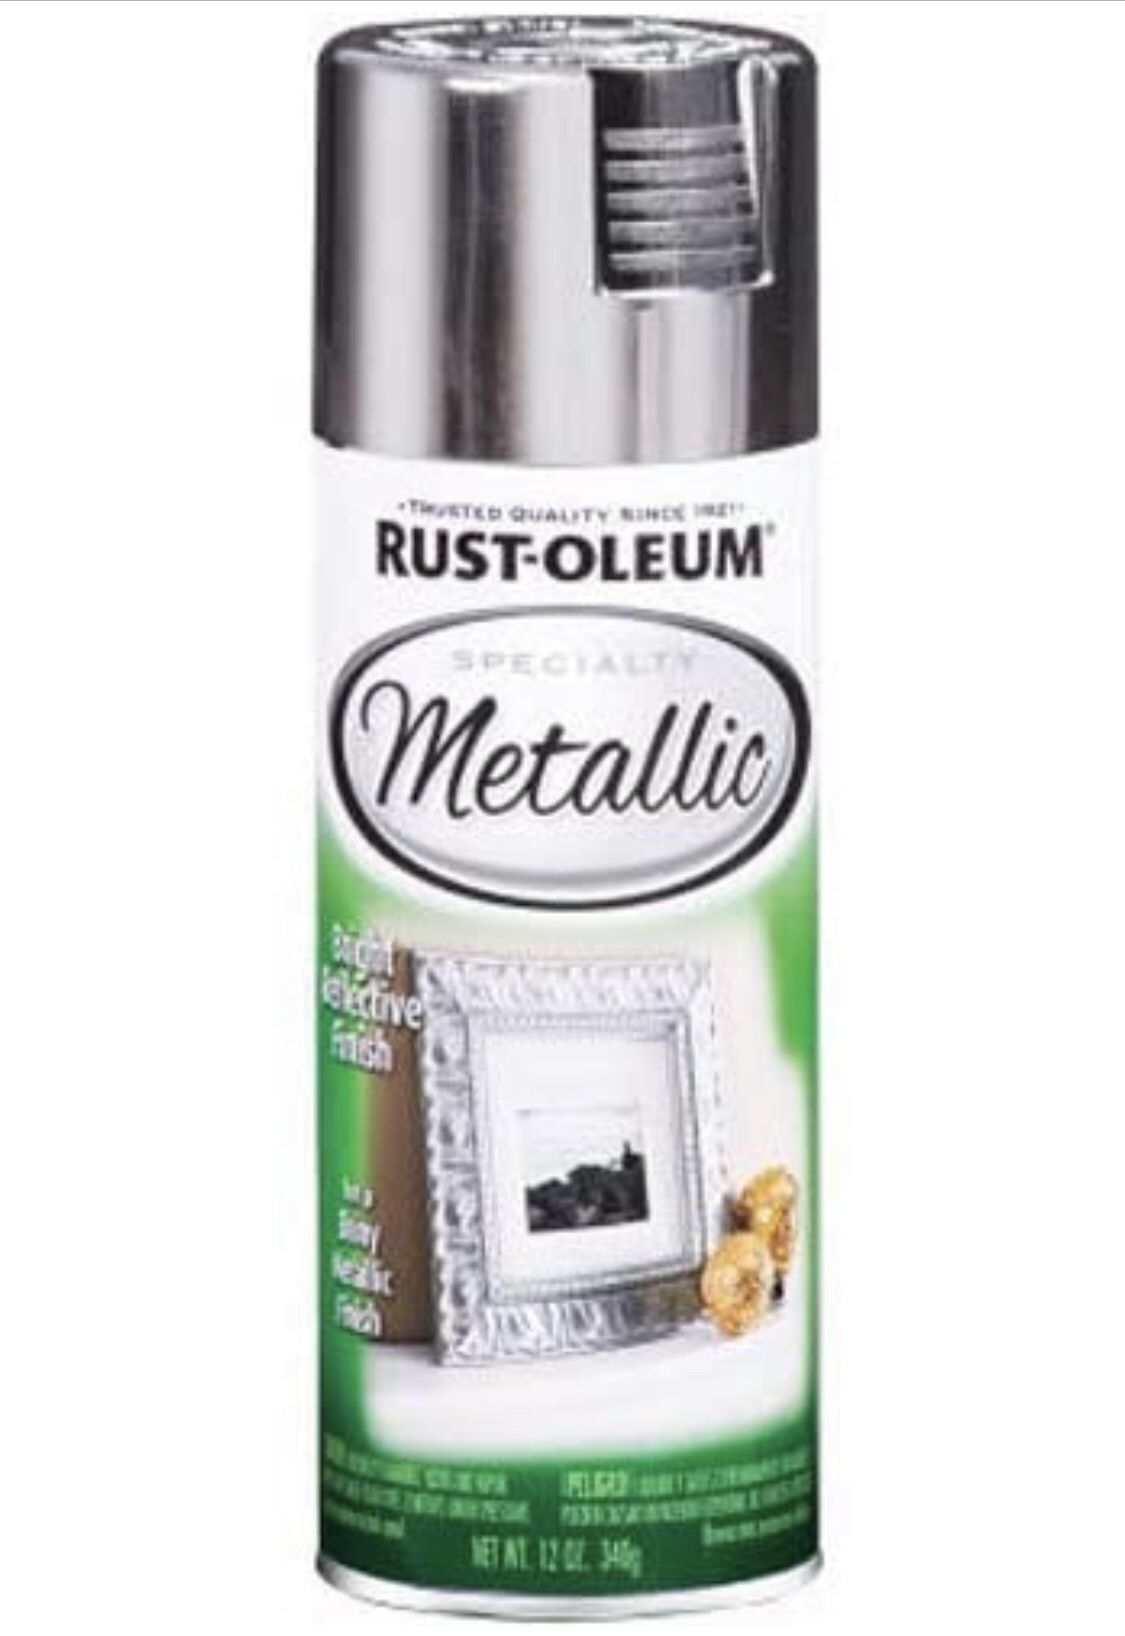 Rustoleum metallic spray paint